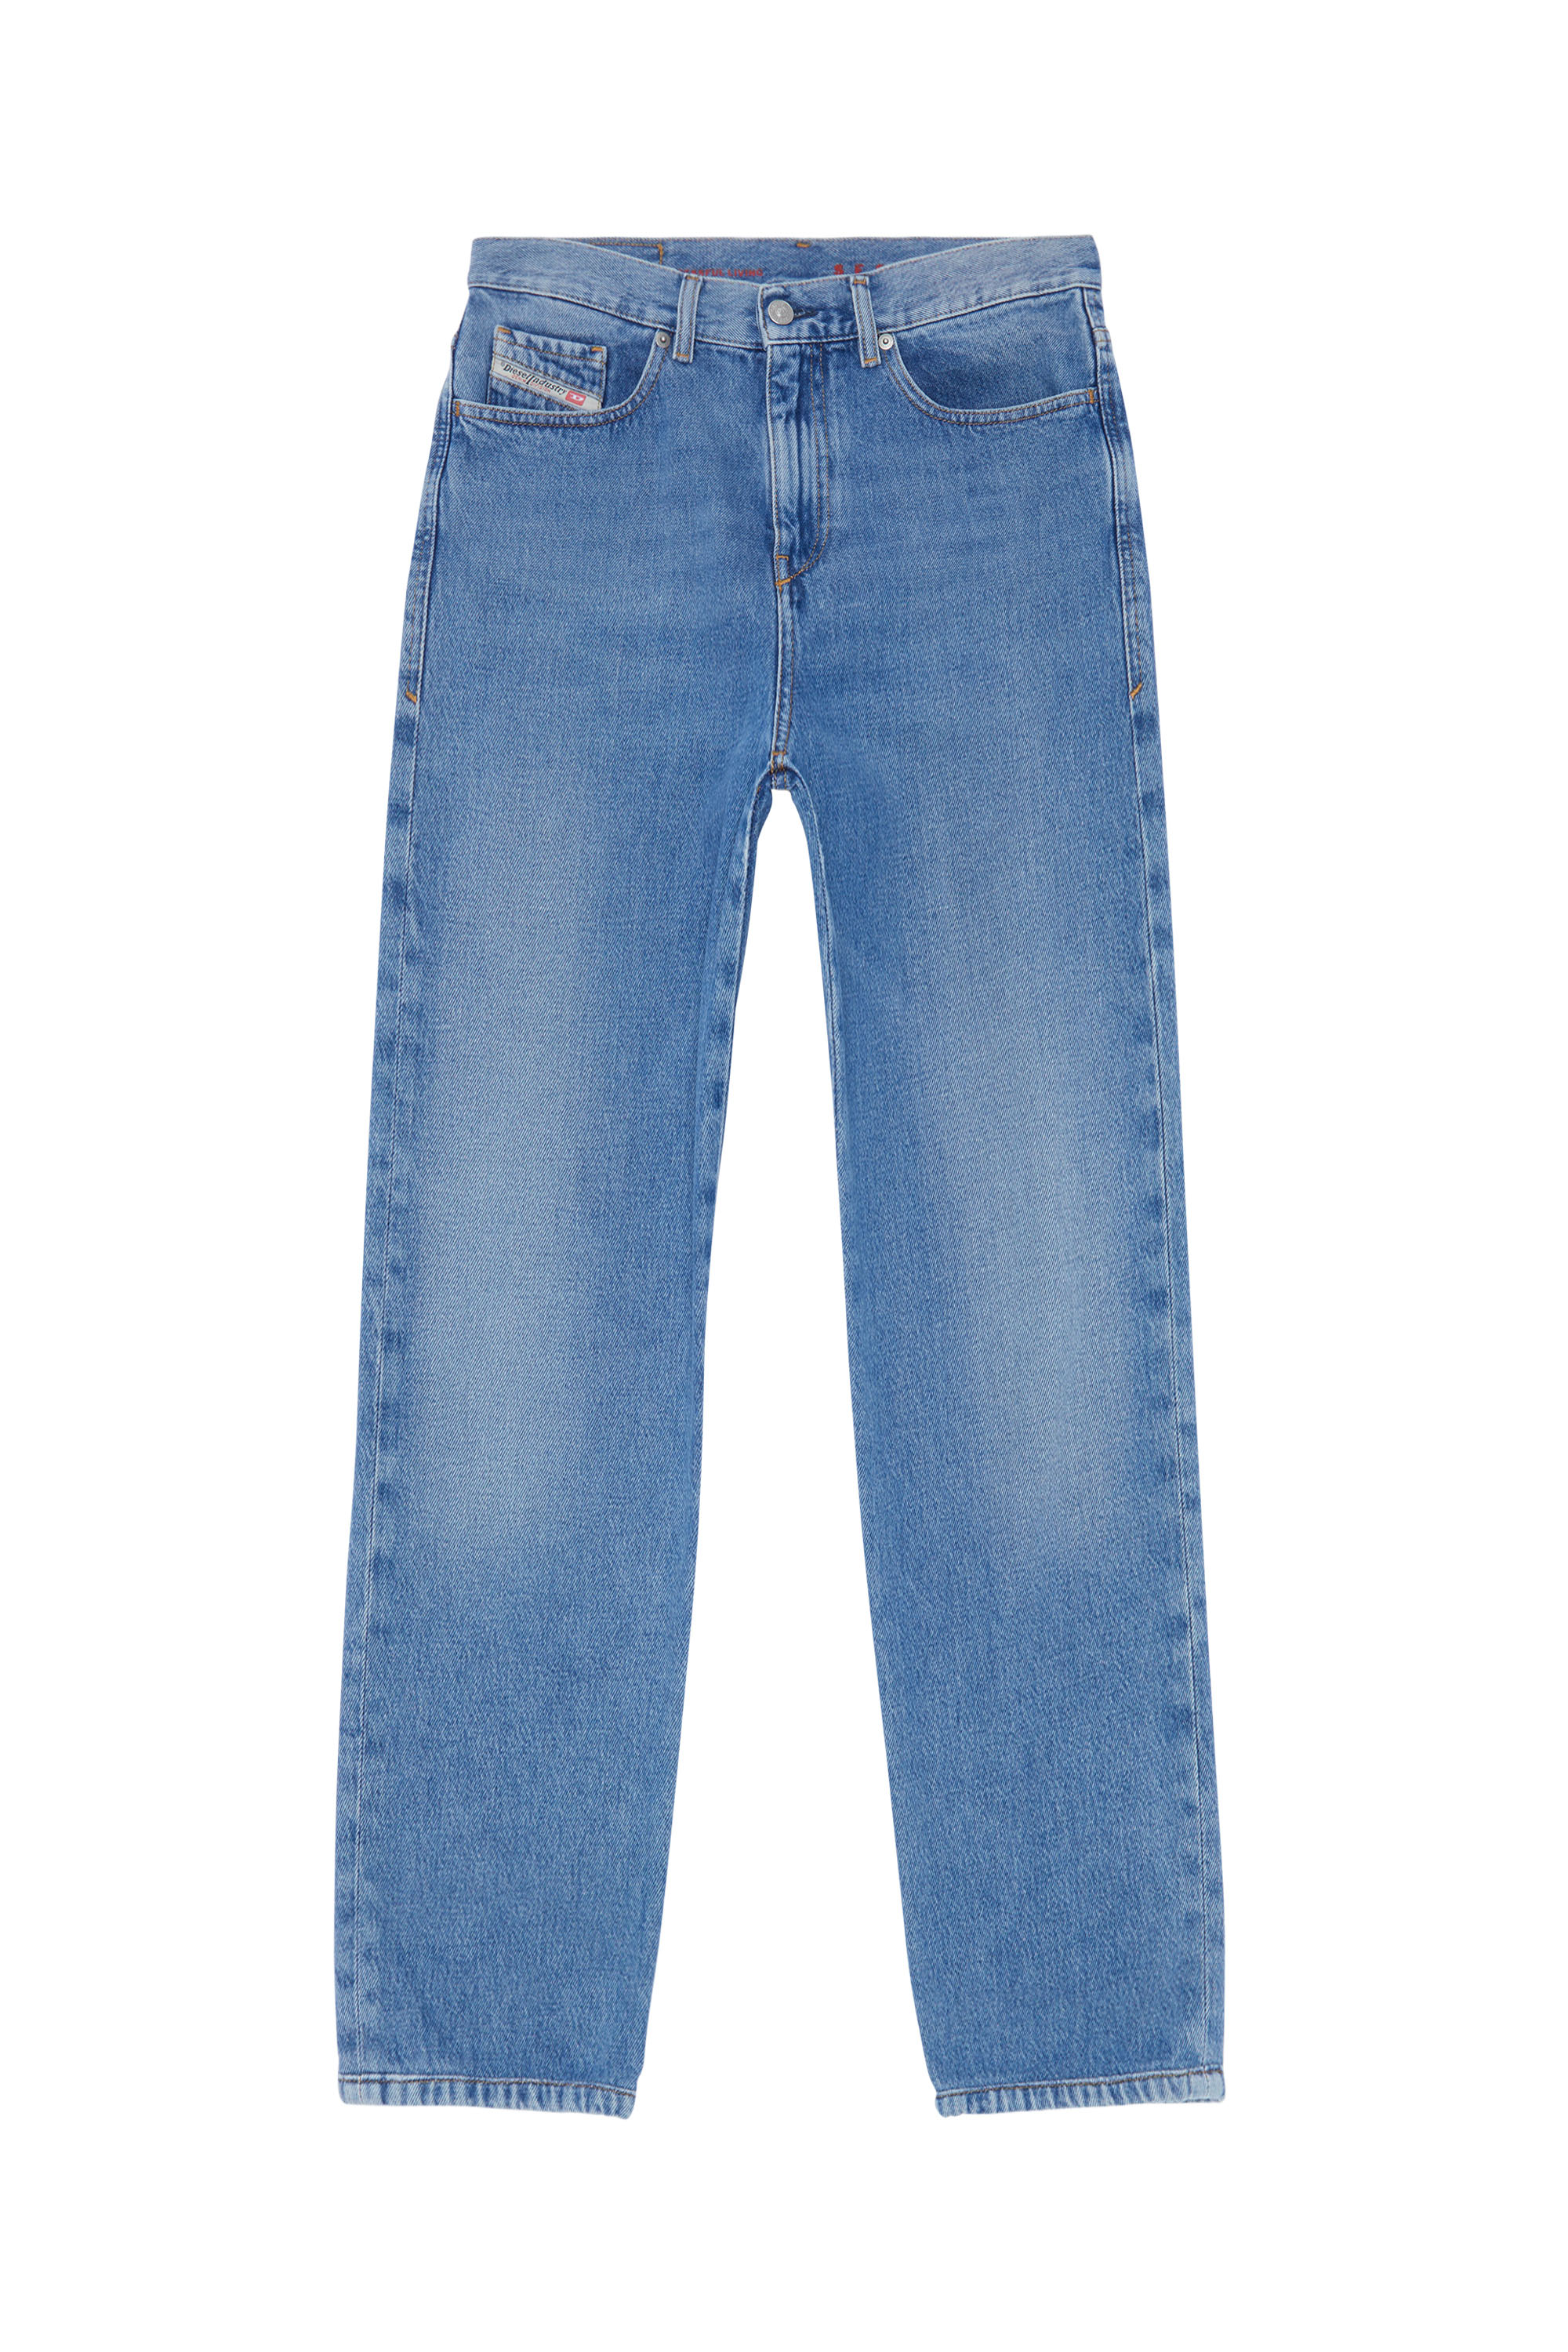 Diesel - Damen - Jeans Hellblau - Jeans - Damen - Blau